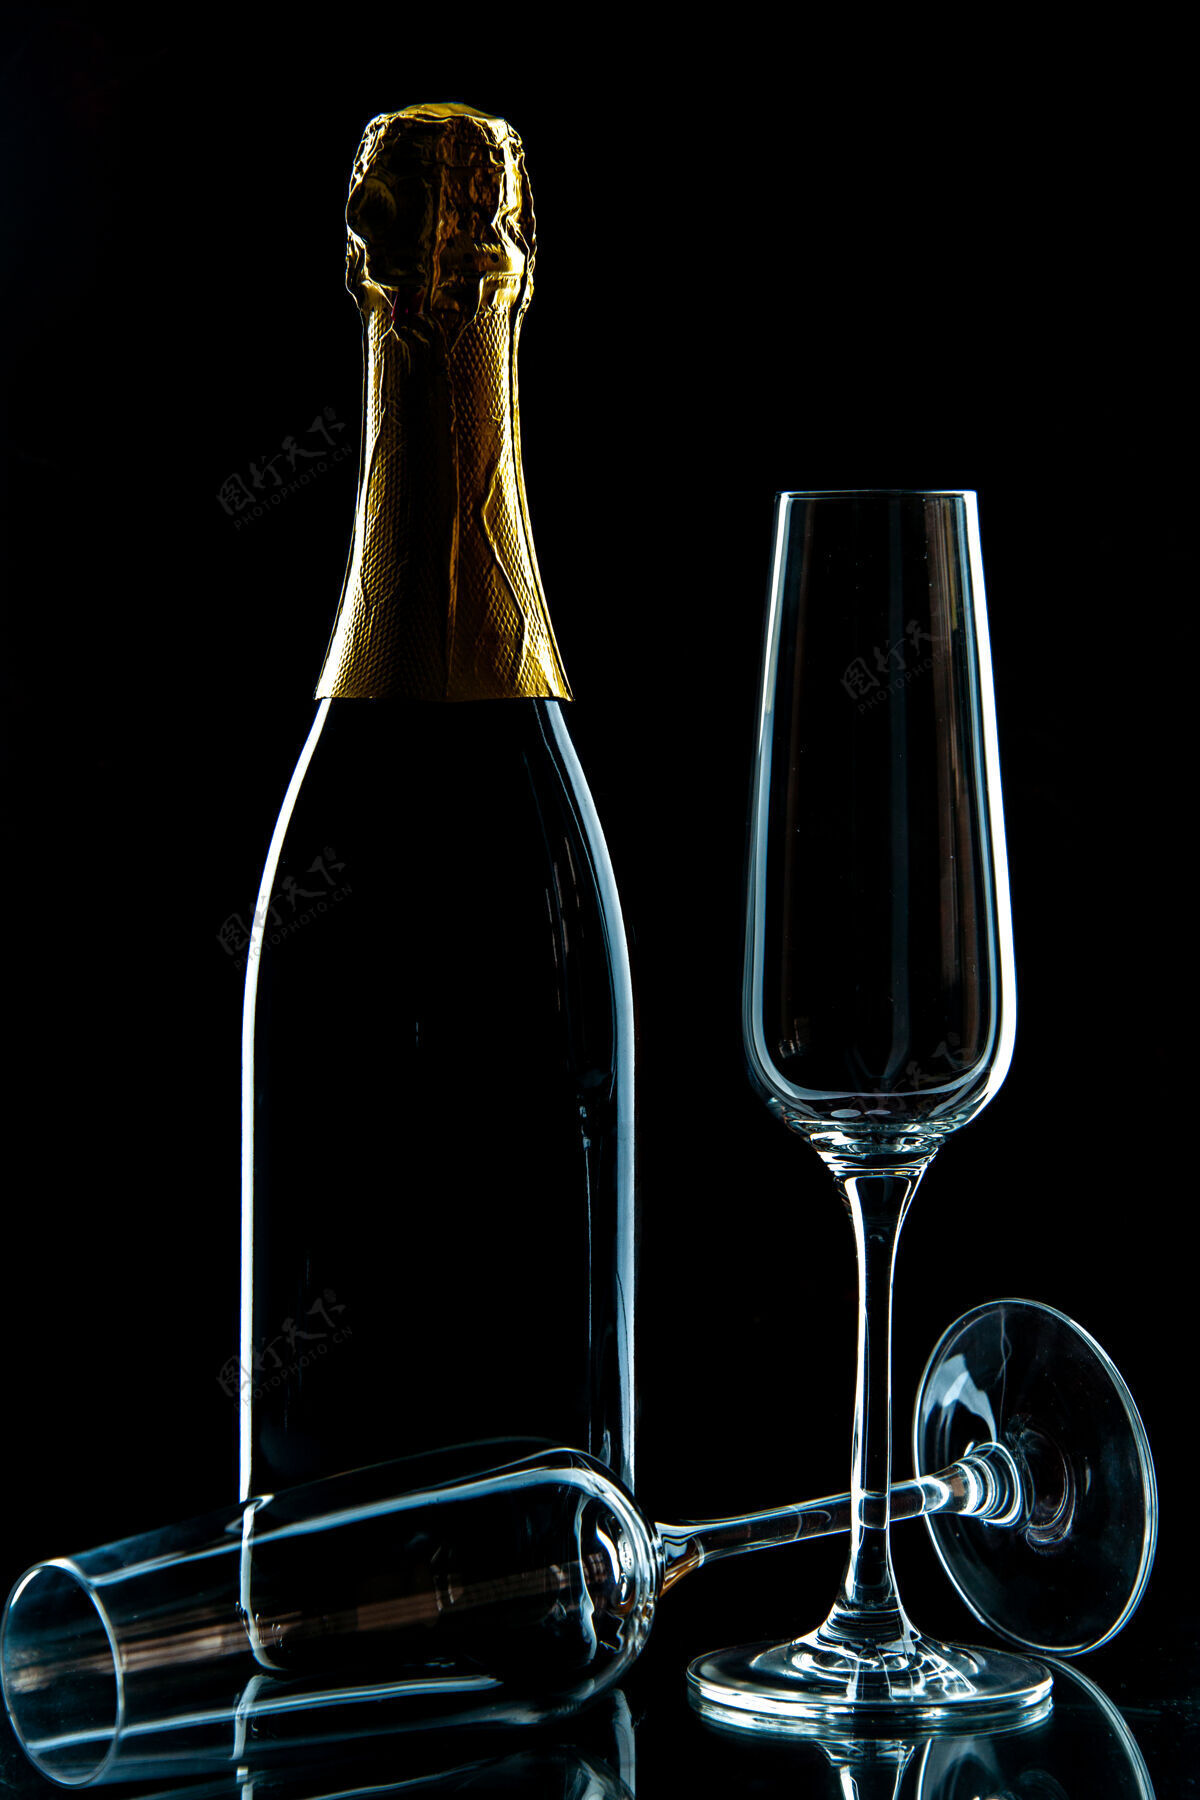 酒杯前视空酒杯上有香槟酒的黑色透明酒杯照片派对酒杯葡萄酒